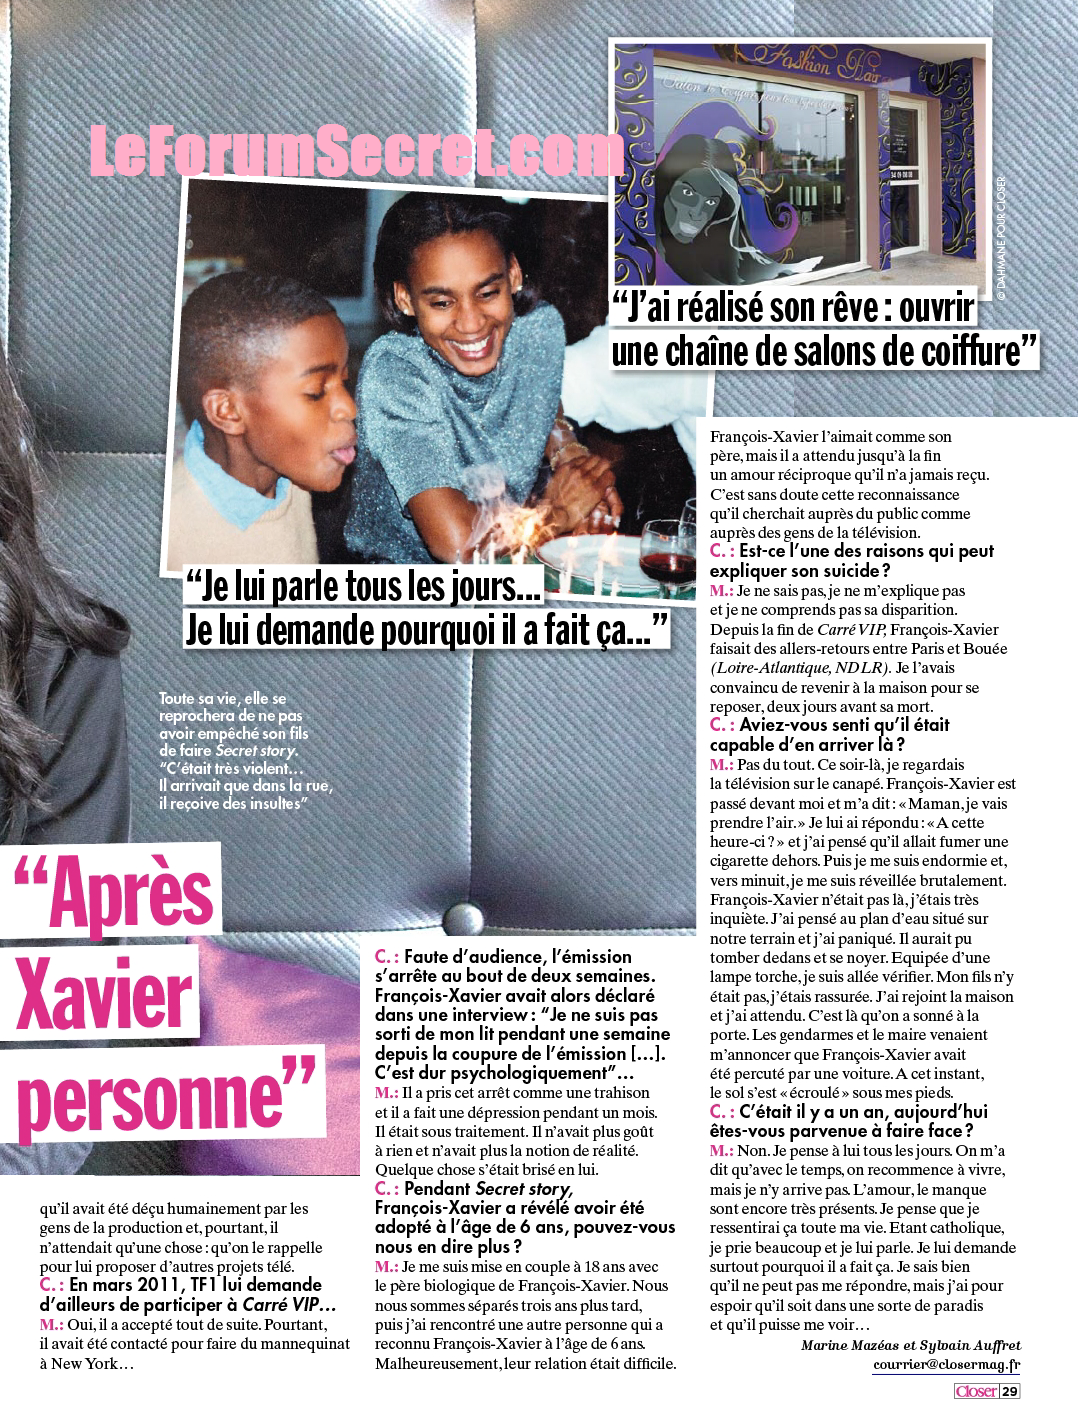 SCAN CLOSER / Marielle, la mère de Francois-Xavier "Après Secret Story, il était devenu une autre personne !" XWQoG